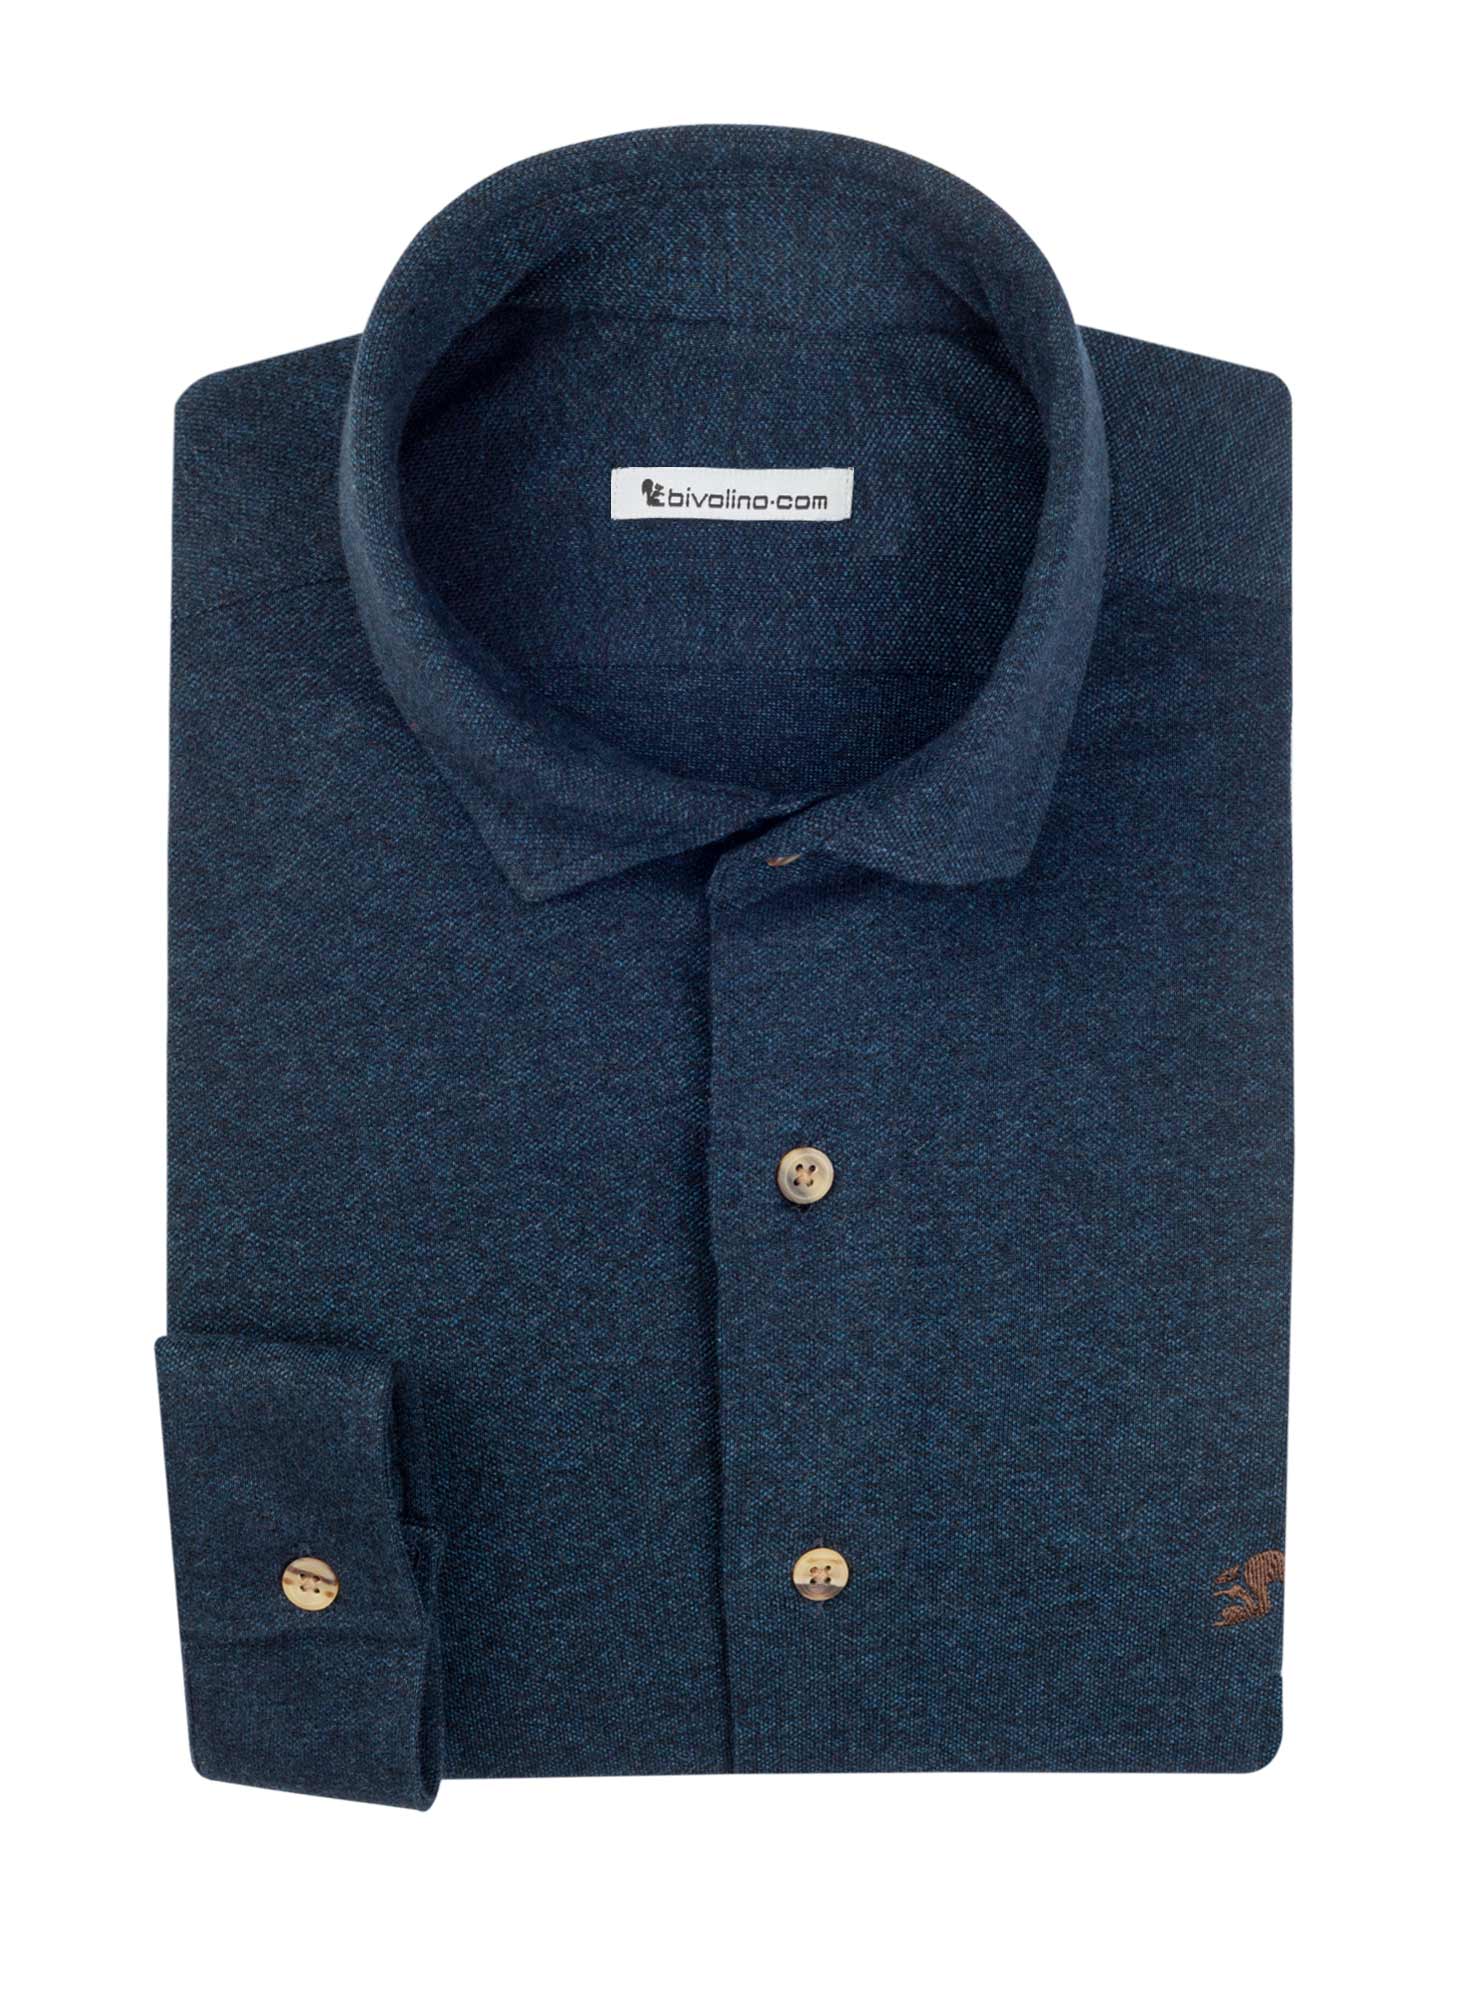 PALERMO - Jersey de piqué 100% algodón azul marino camisa de hombre - JERSILI 4